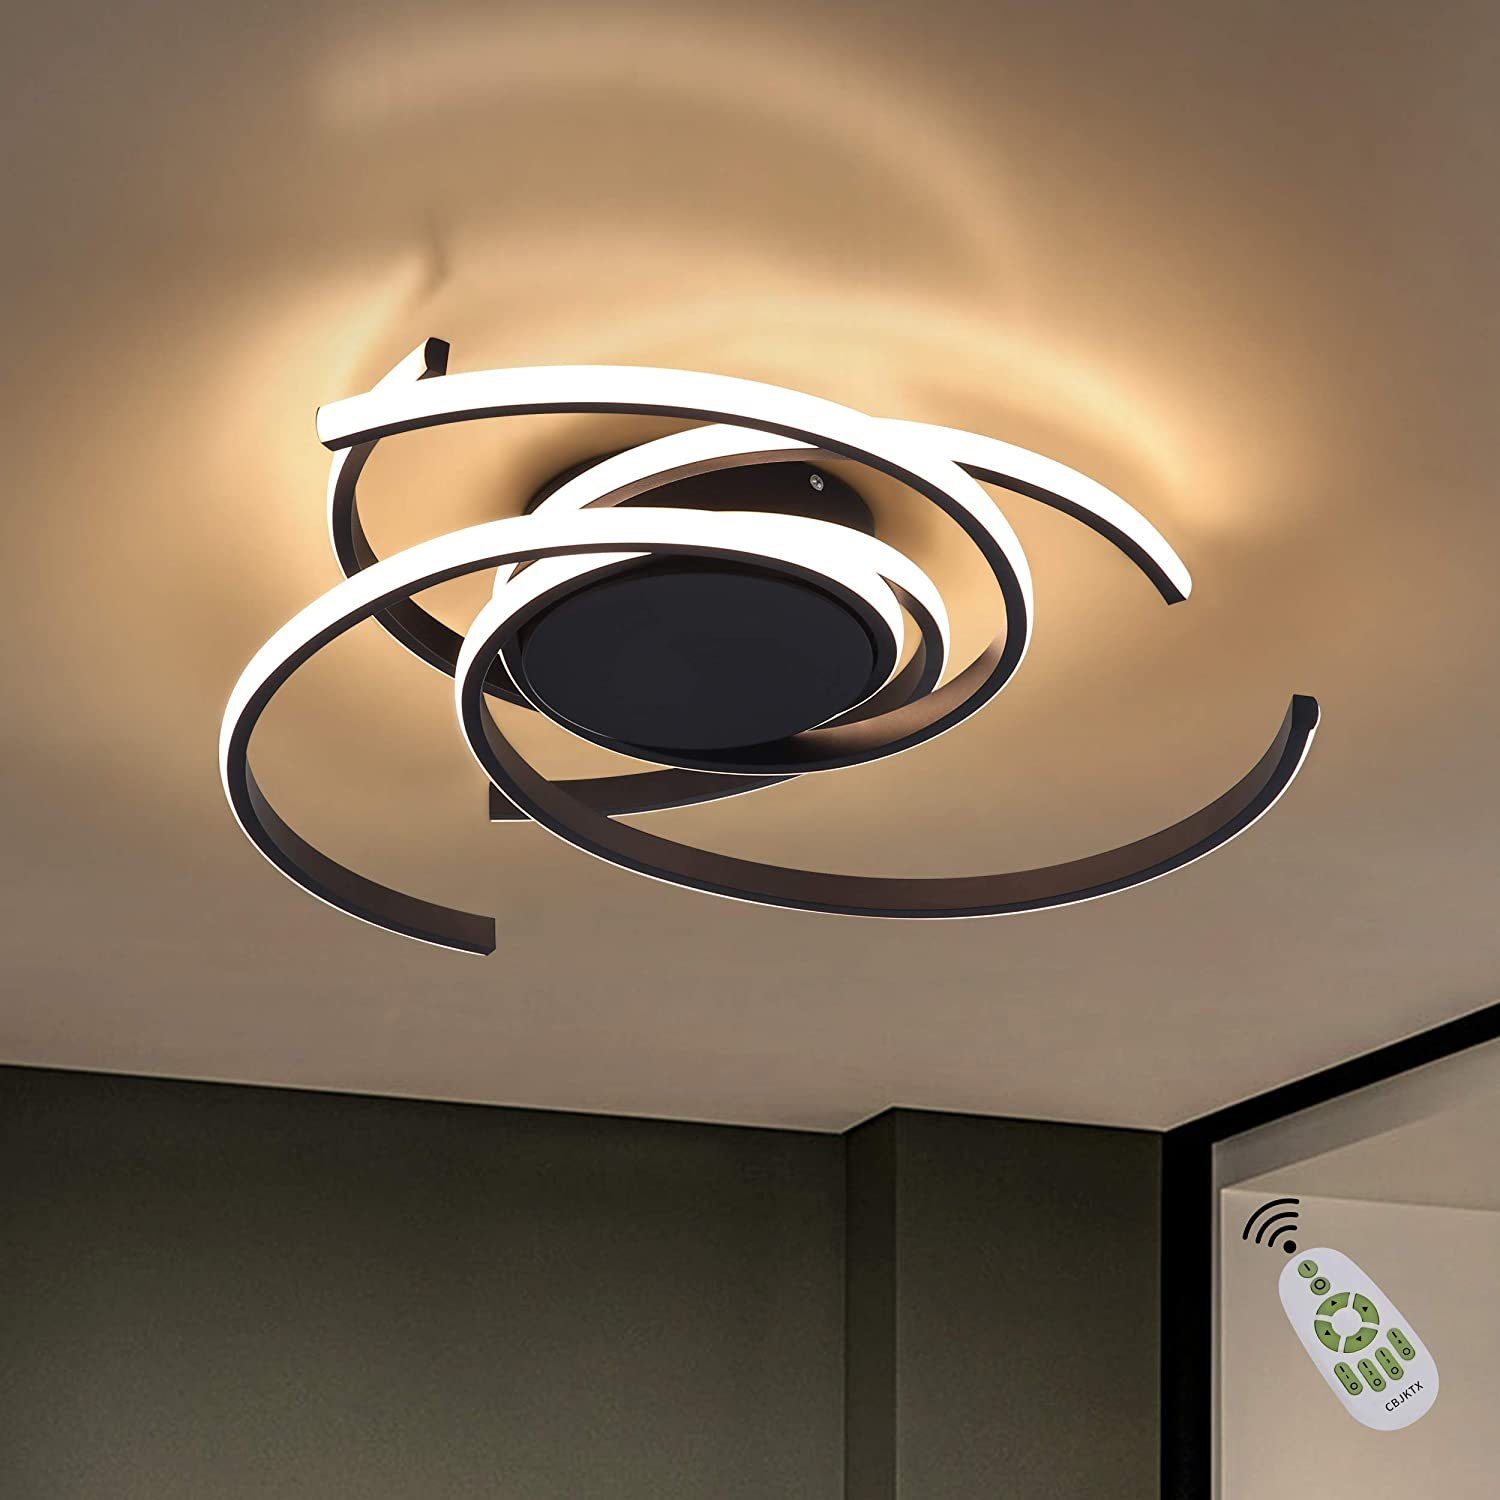 LED dimmbar Flur Leuchten Wohn Schlaf Zimmer Beleuchtung Aluminium Decken Lampen 